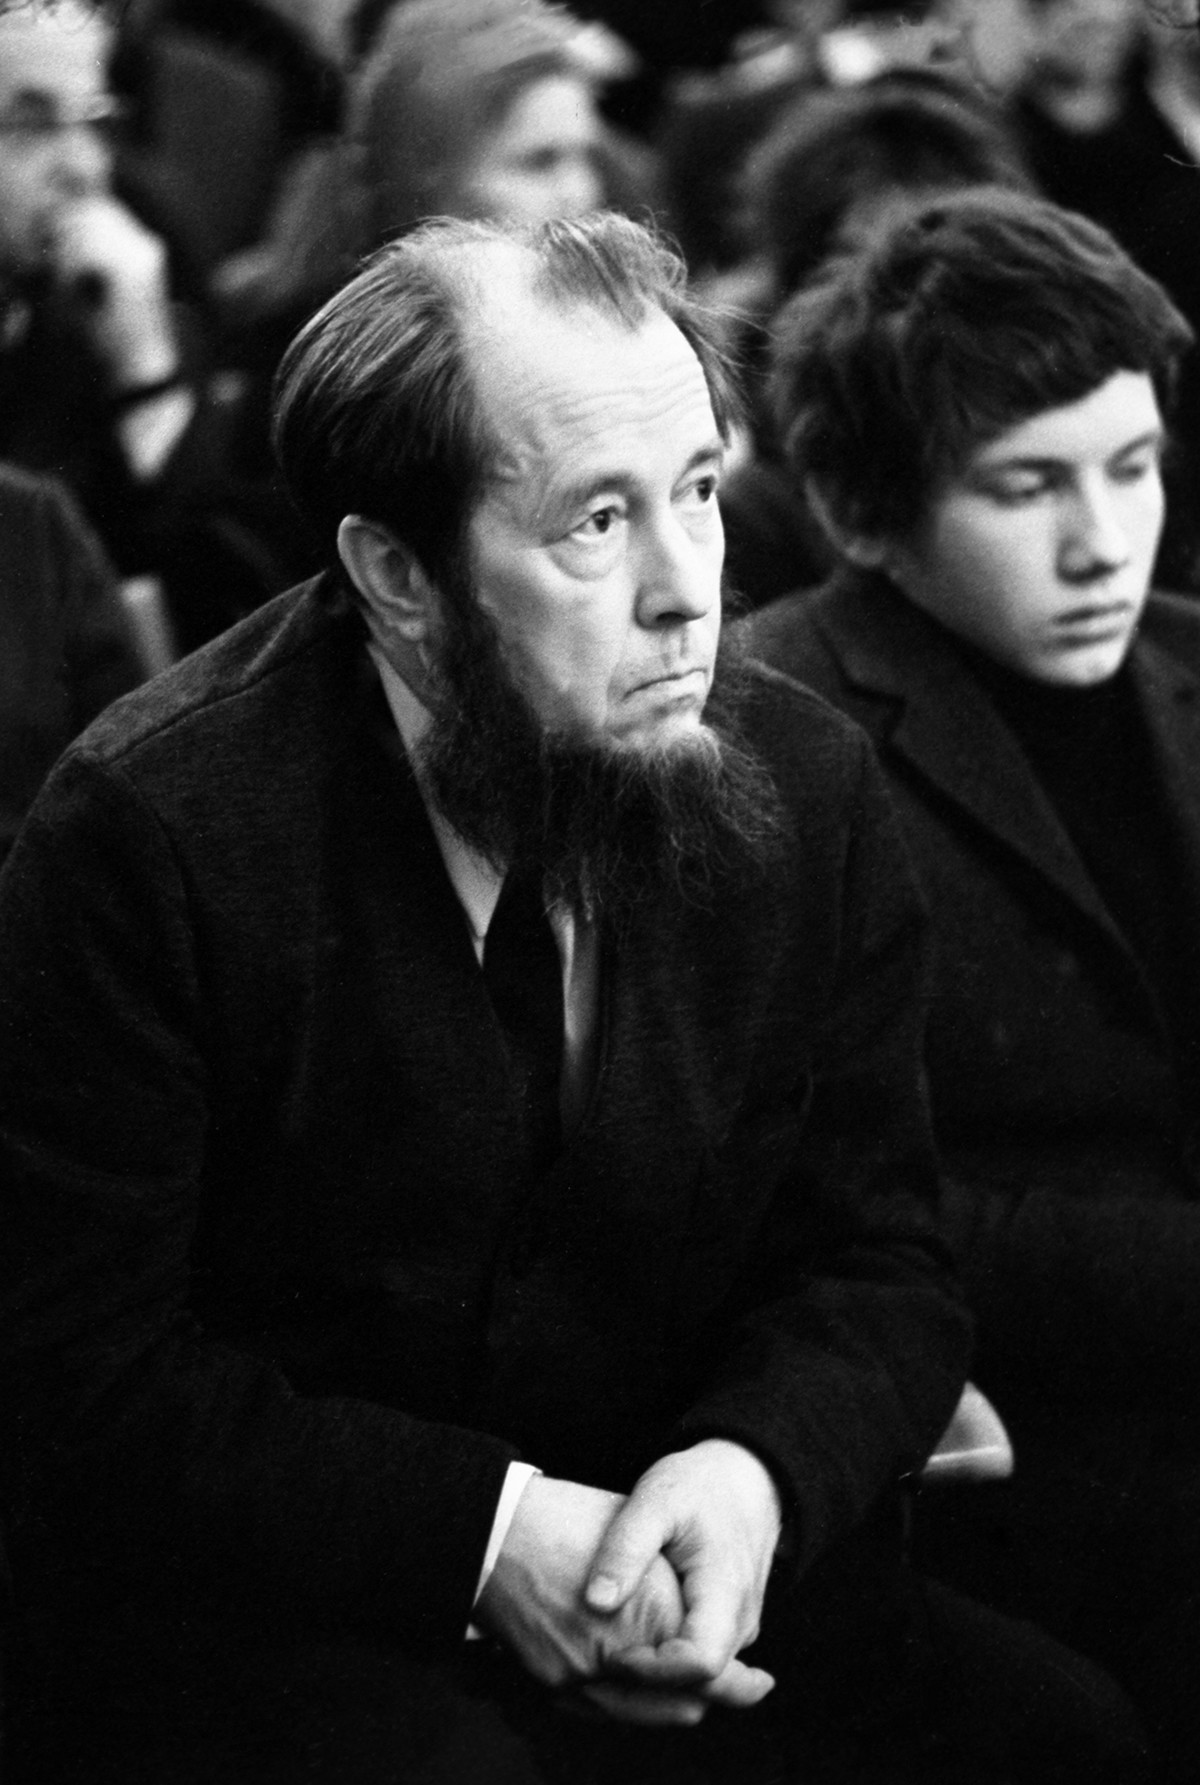 Buku tentang Gulag karya Aleksandr Solzhenitsyn adalah yang pertama diizinkan oleh otoritas Soviet. Pada 1970, Solzhenitsyn dianugerahi Hadiah Nobel dan terpaksa meninggalkan Uni Soviet pada 1974.